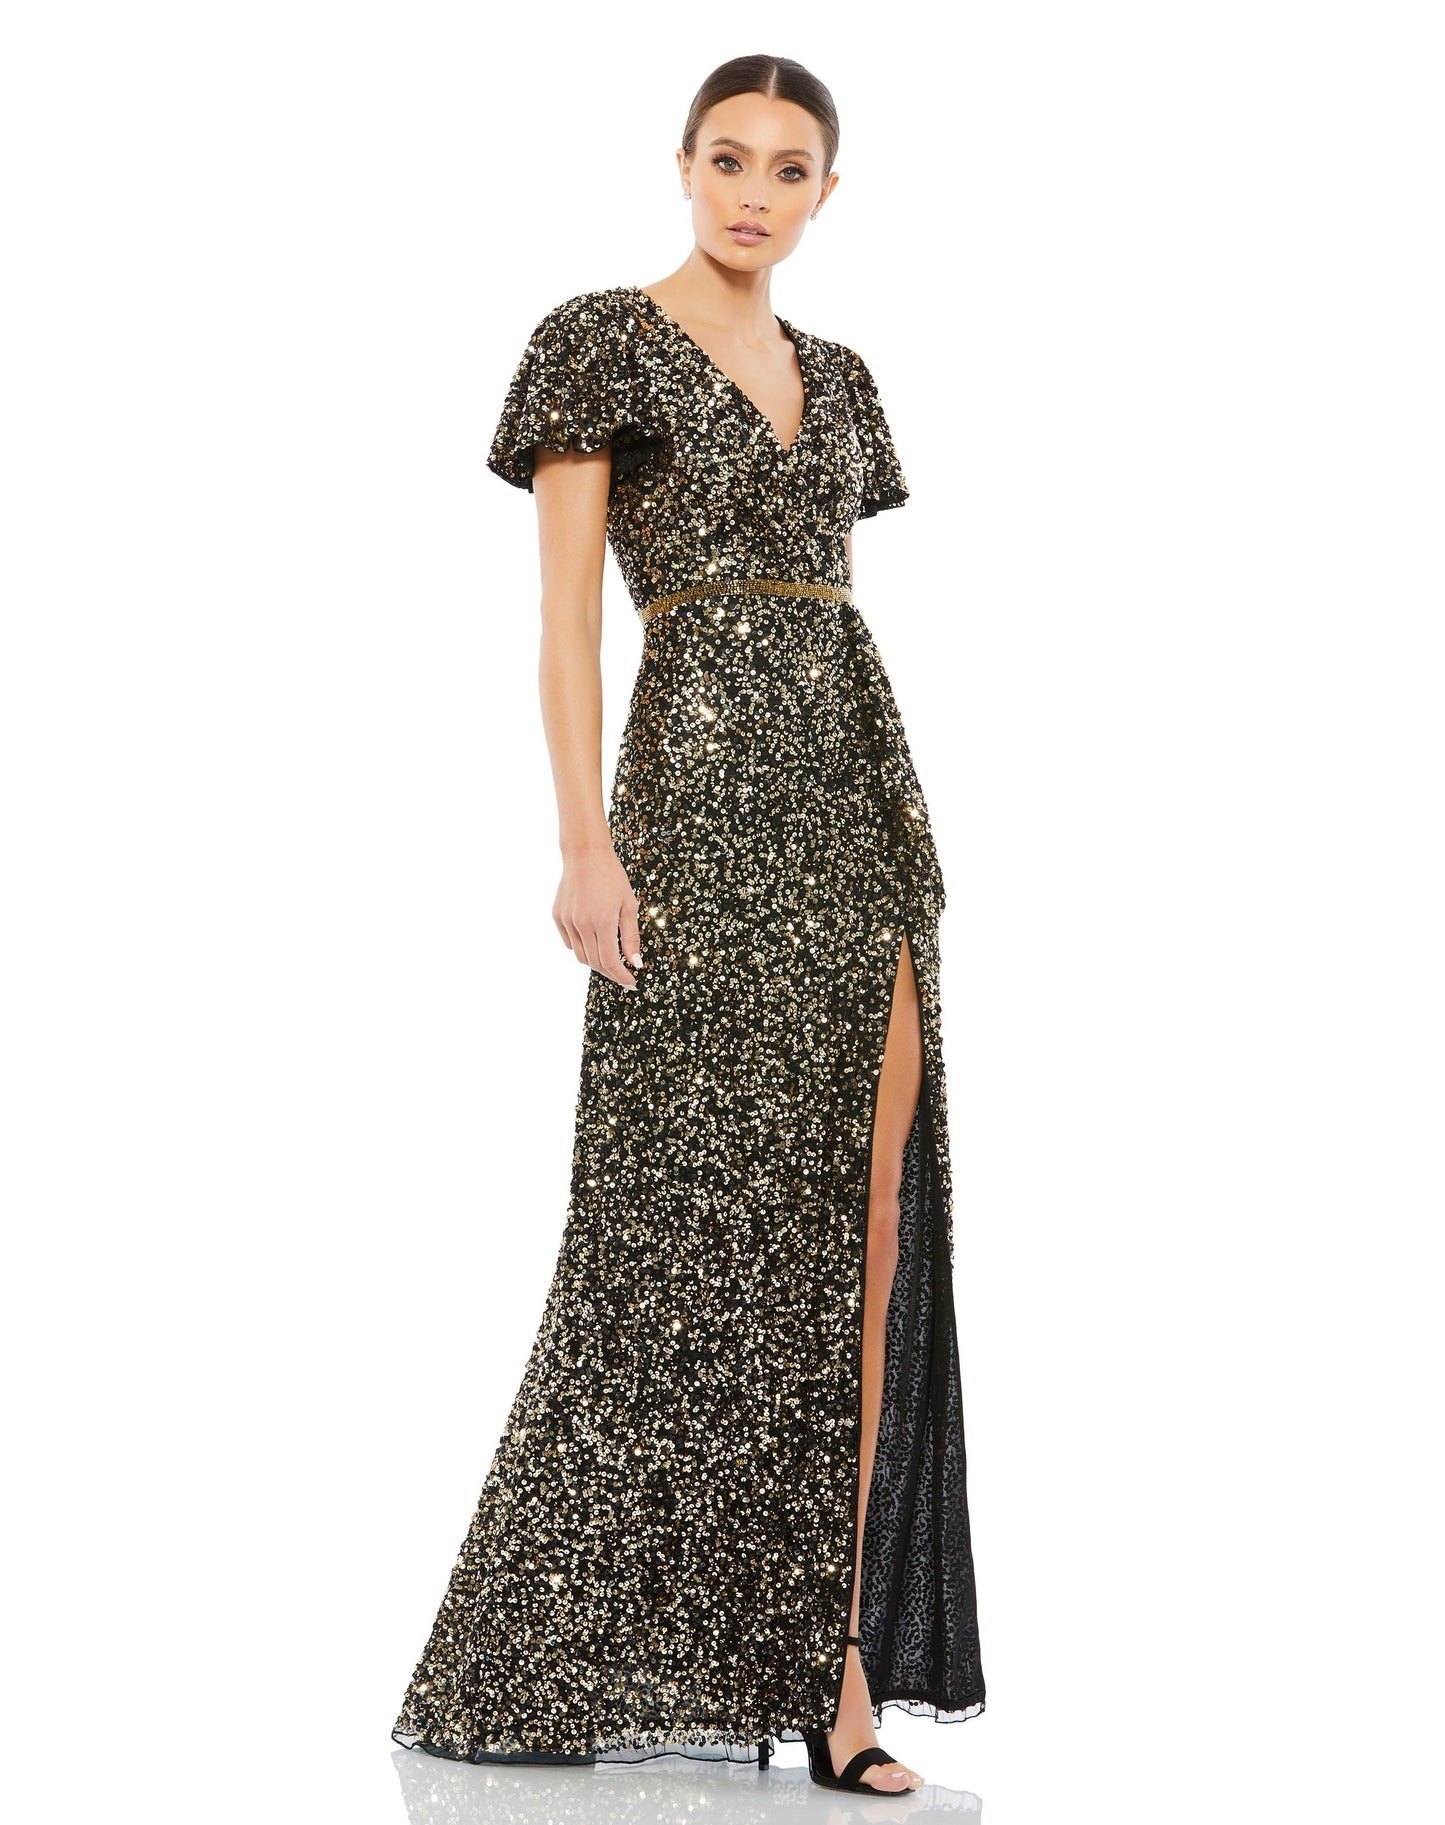 Formal Dresses Long Formal Beaded Dress Black Gold